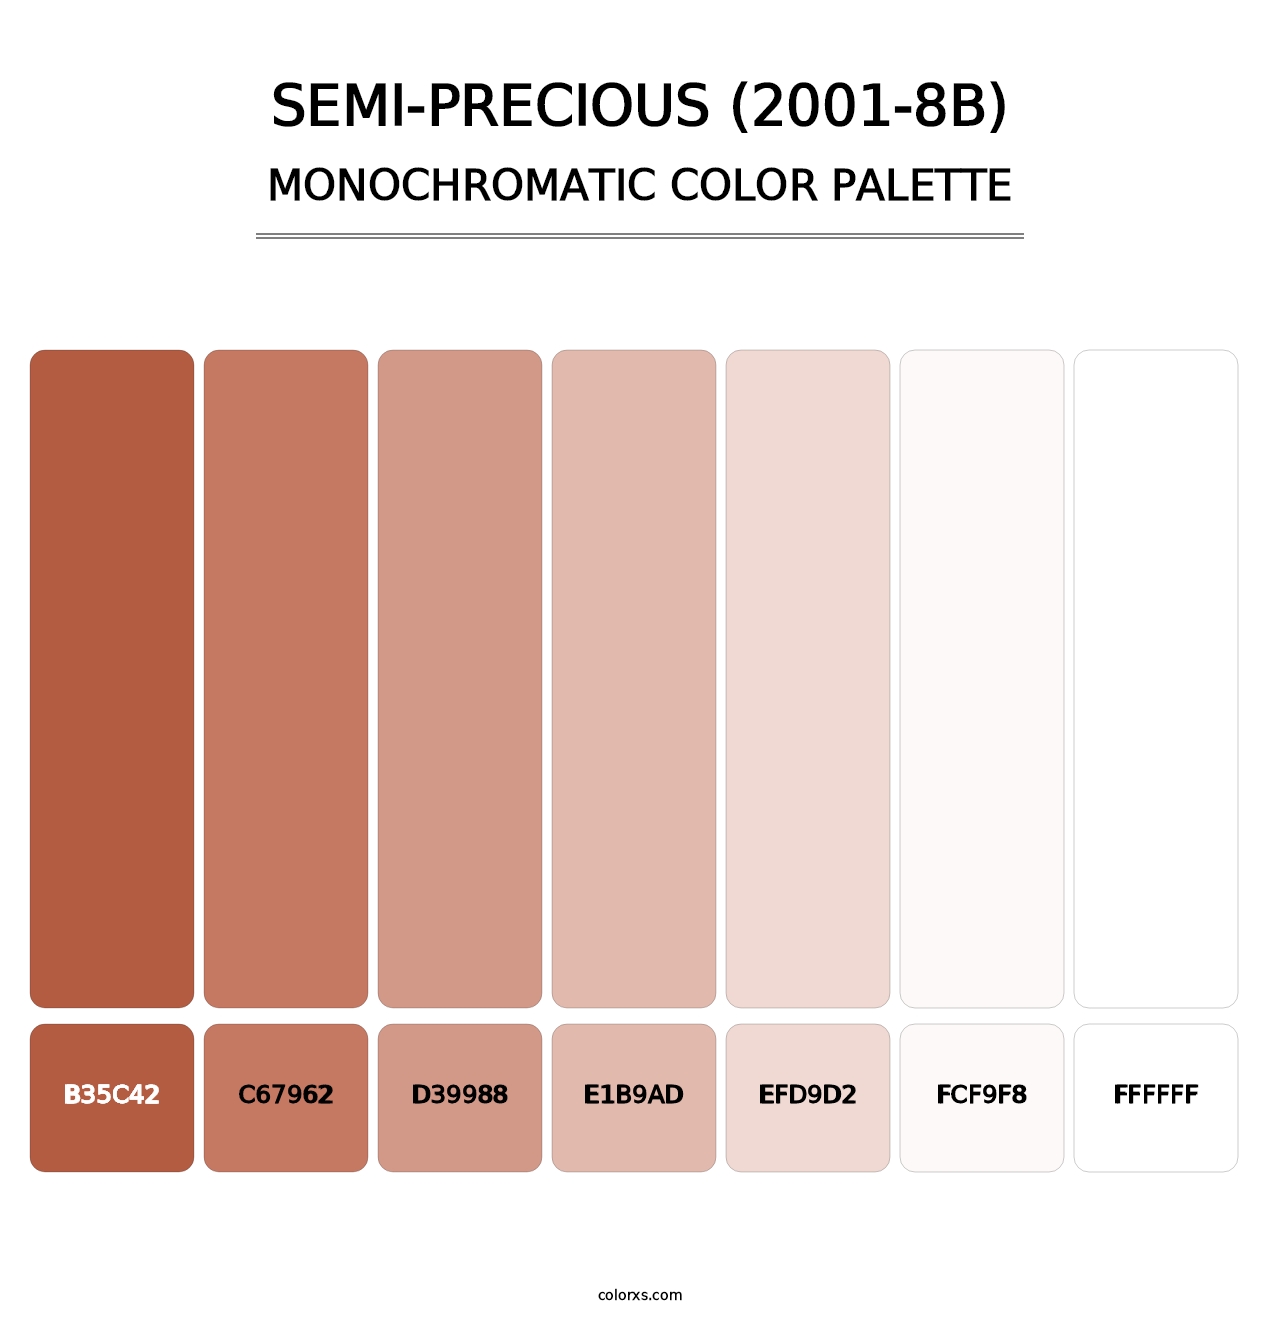 Semi-Precious (2001-8B) - Monochromatic Color Palette